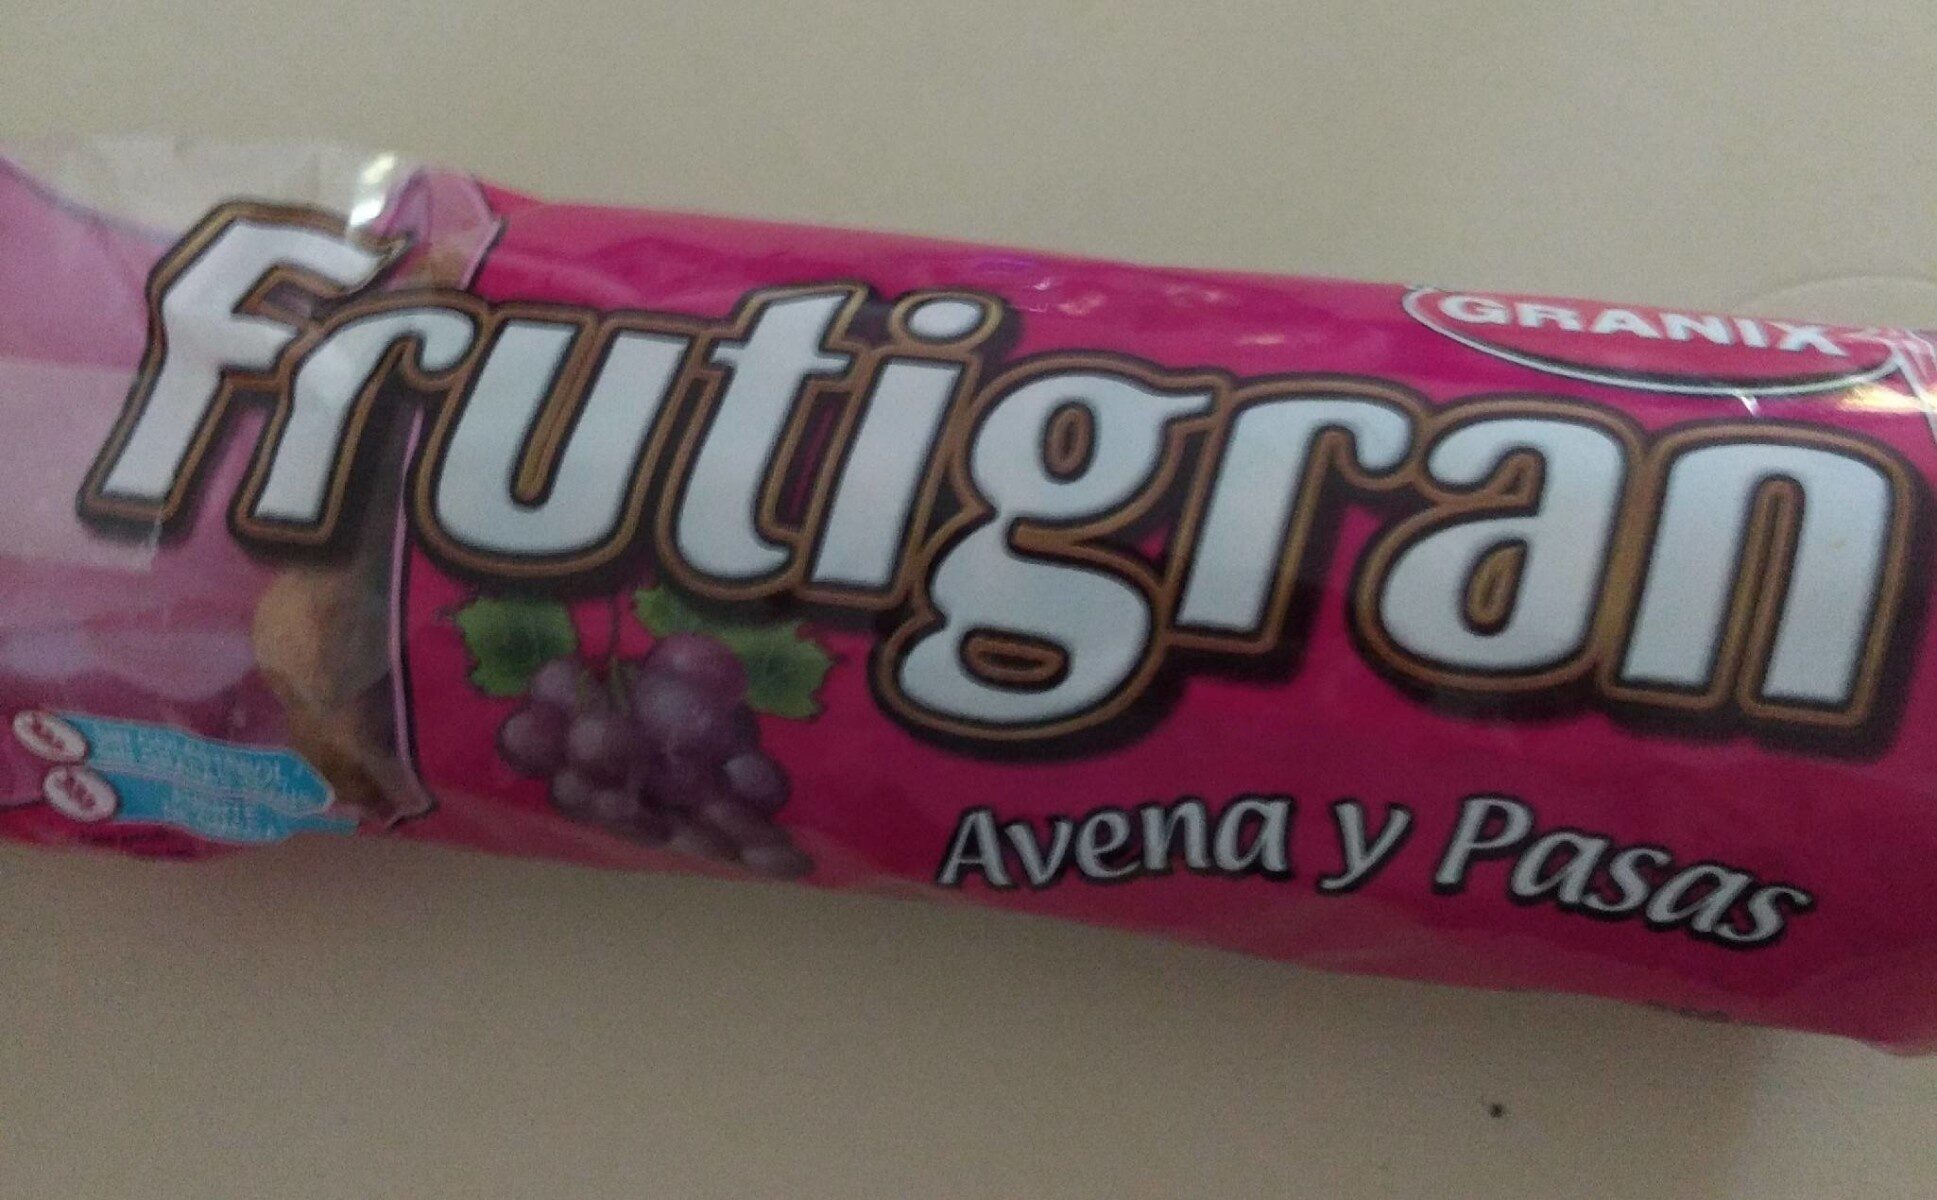 Frutigran Avena y Pasas - Product - es